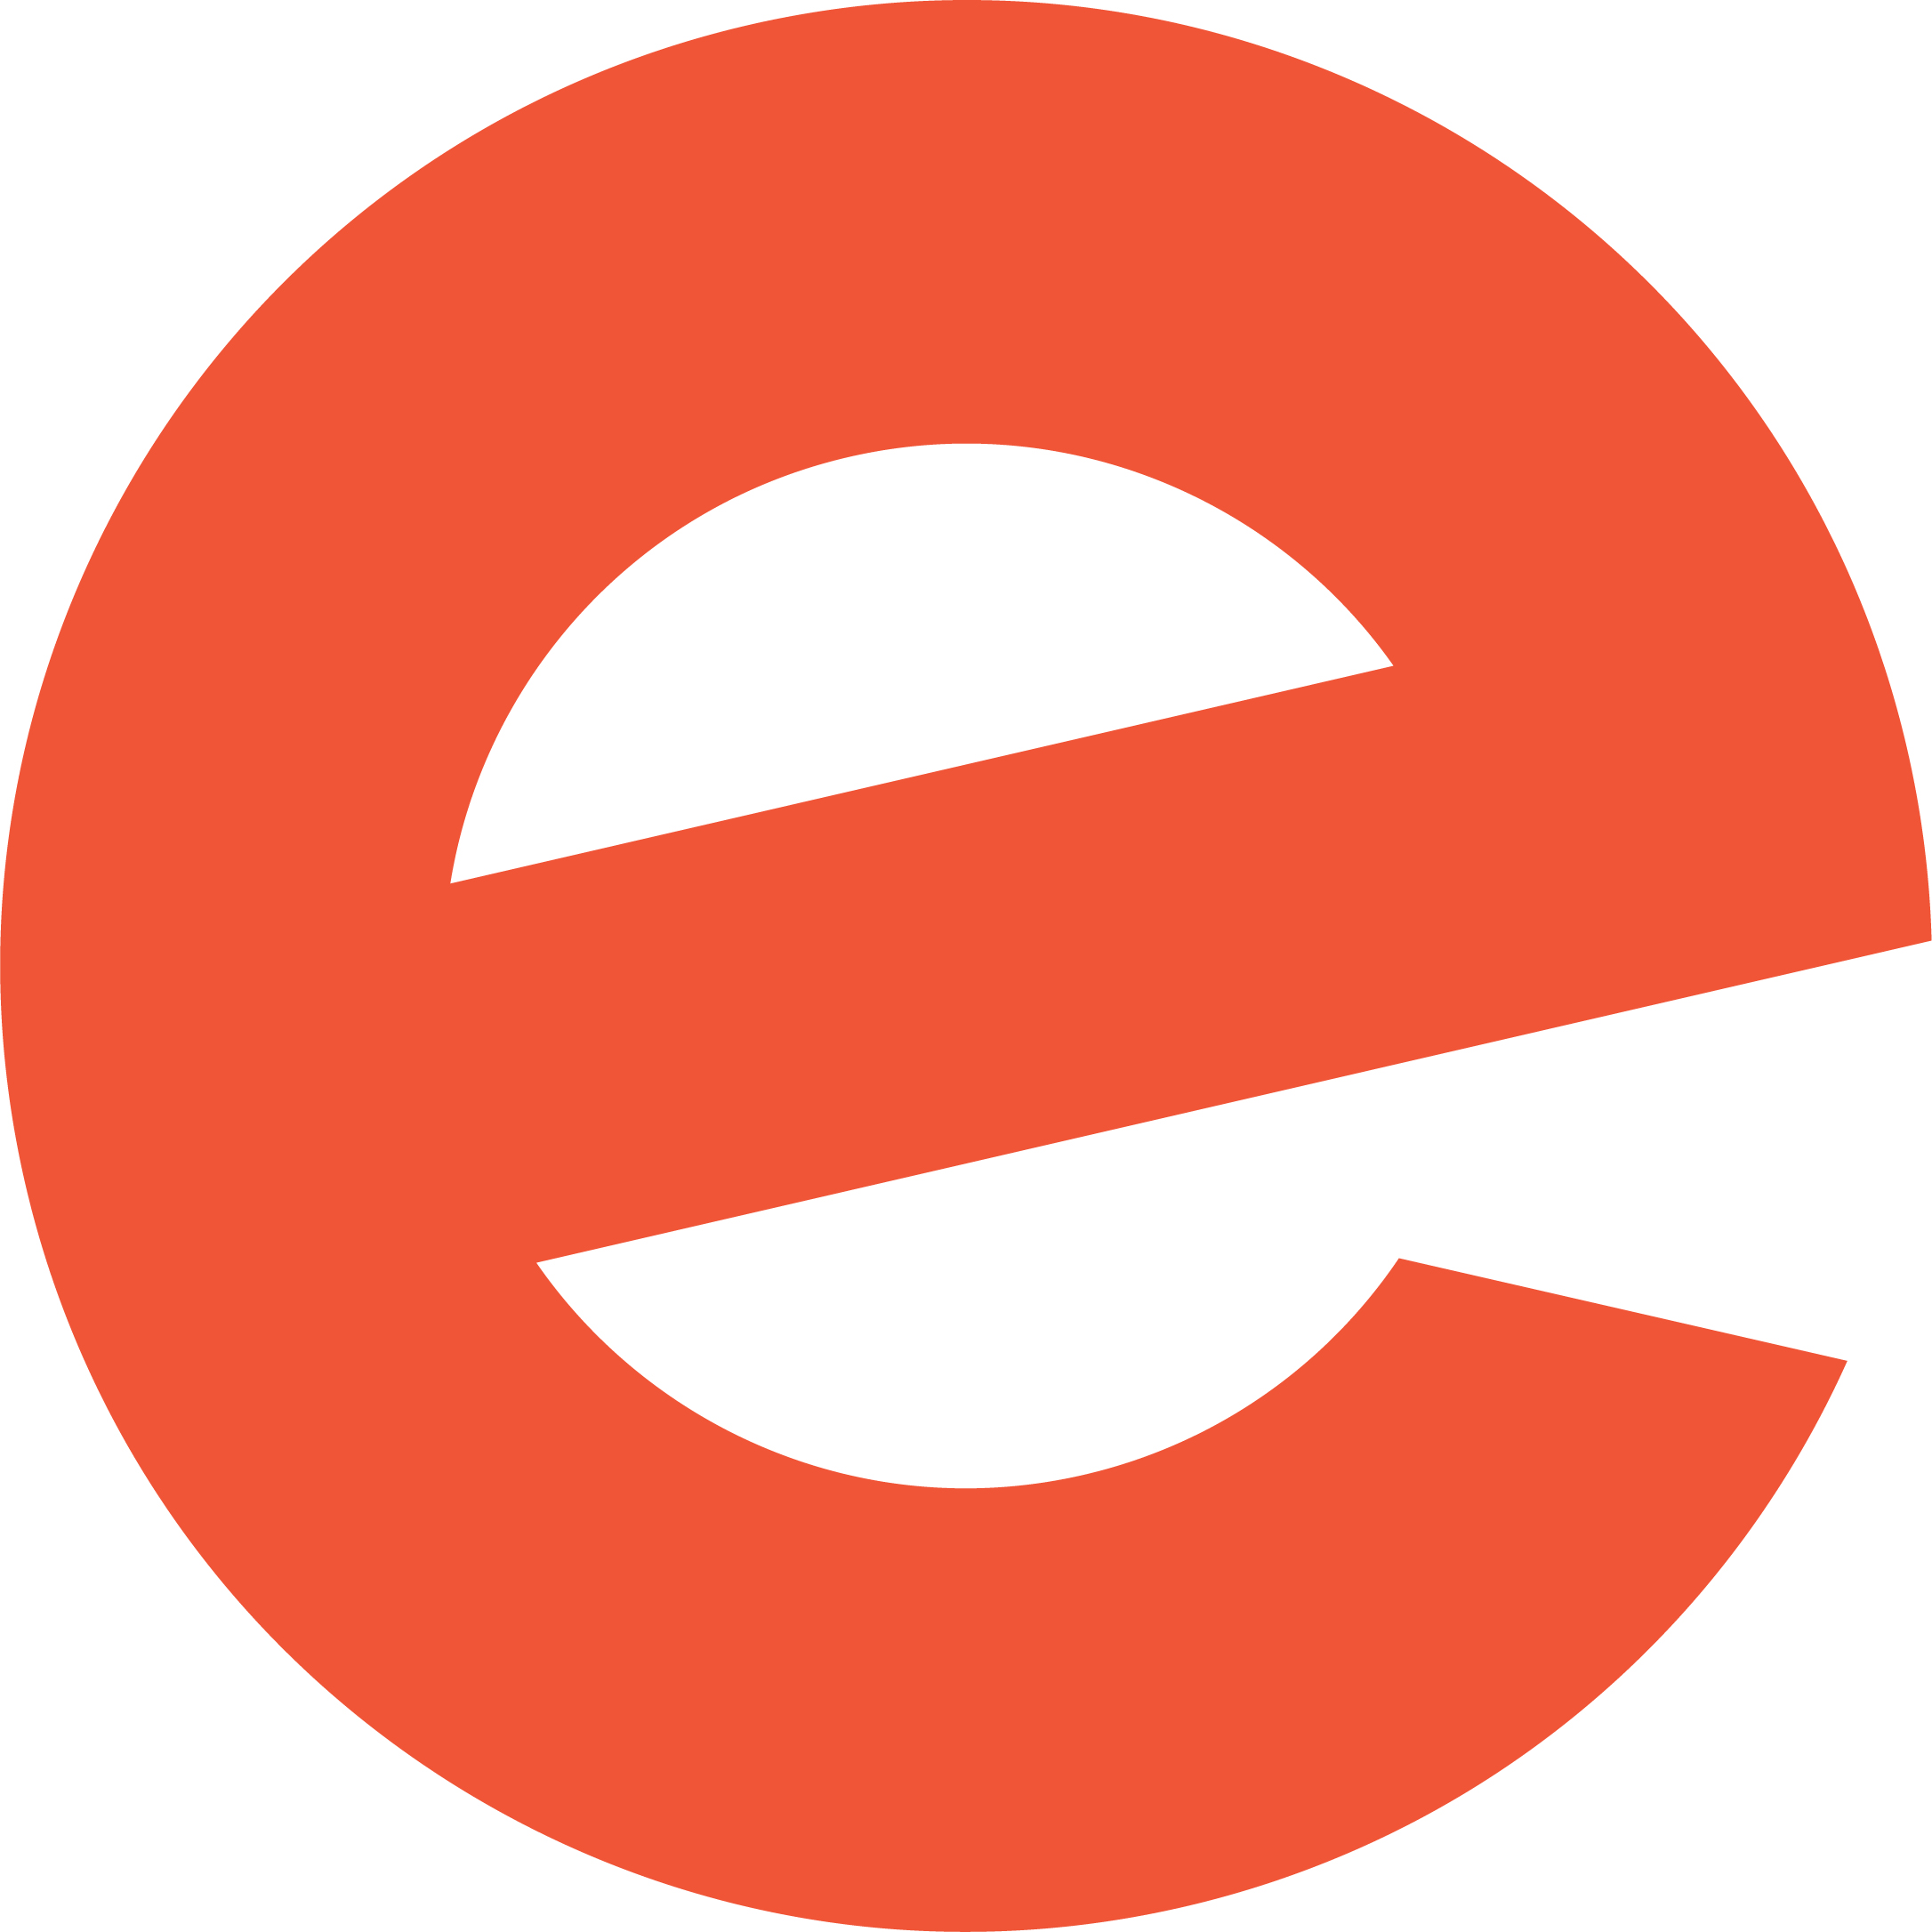 Eventbrite_symbol_orange.jpg